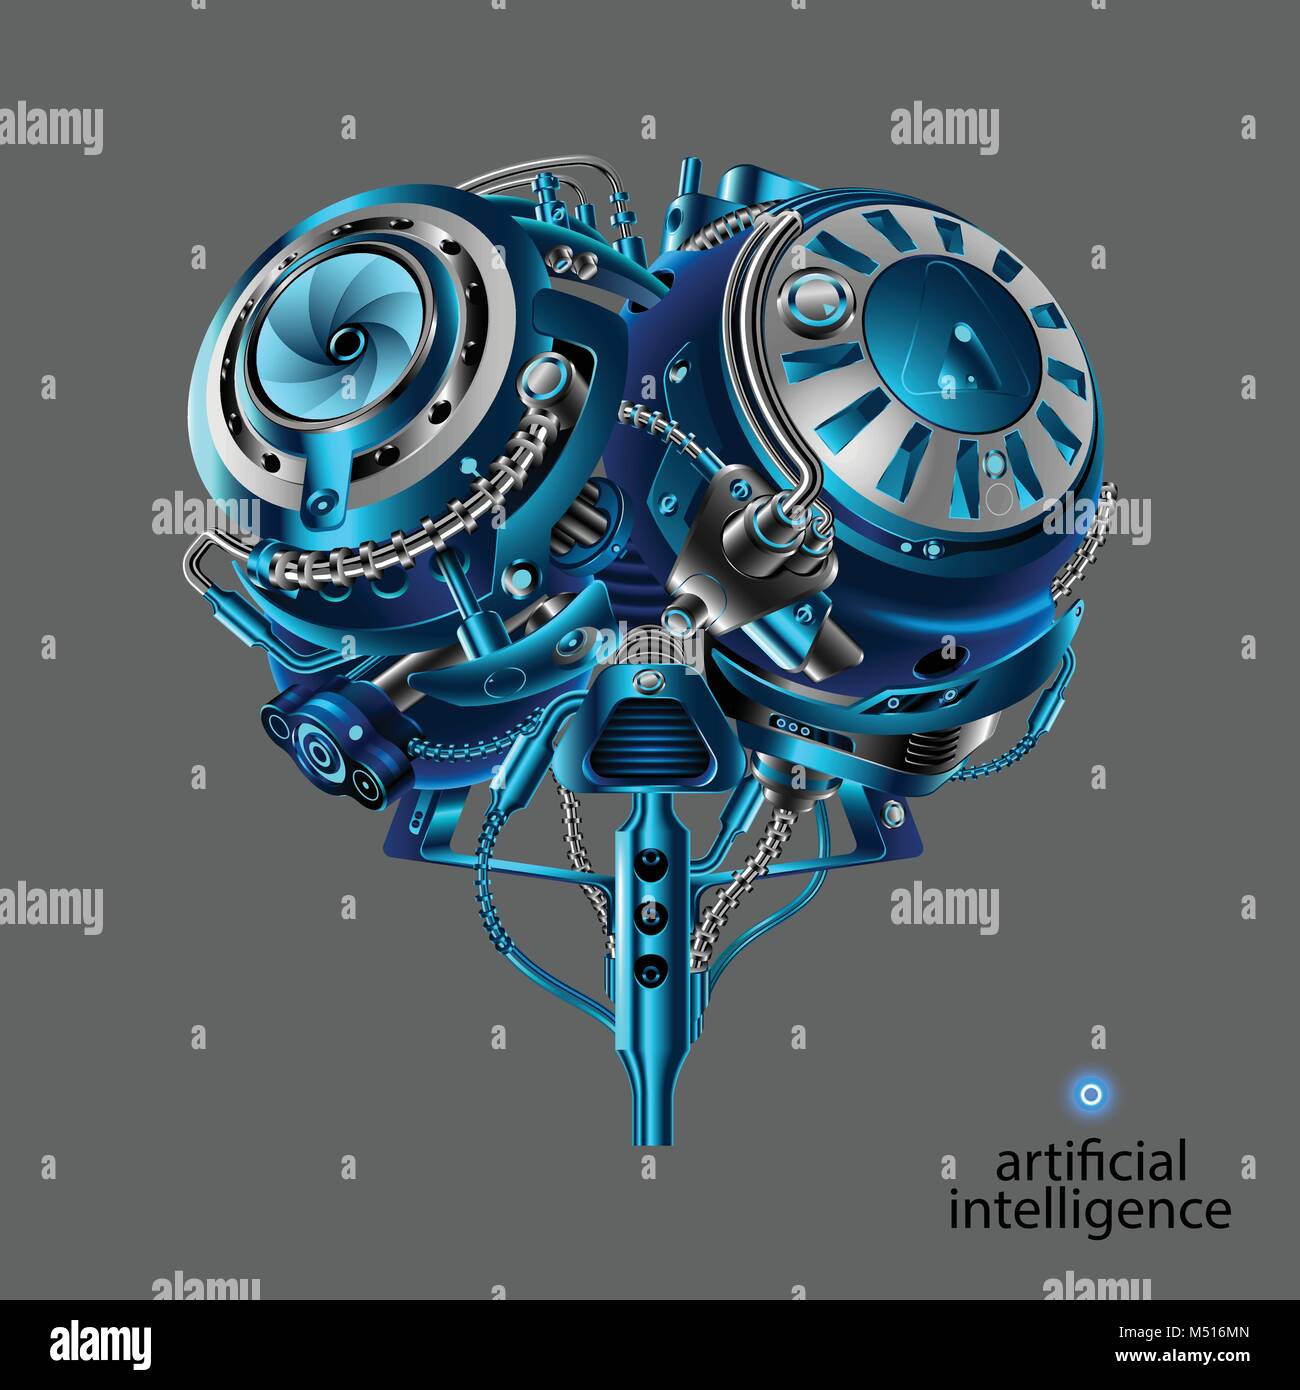 Die mechanischen Gehirn des Roboters. Künstliche Intelligenz. Mechanische elektronischen Teil der Roboter Kopf im Stil von cyber Punk oder Steam Punk vint Stock Vektor